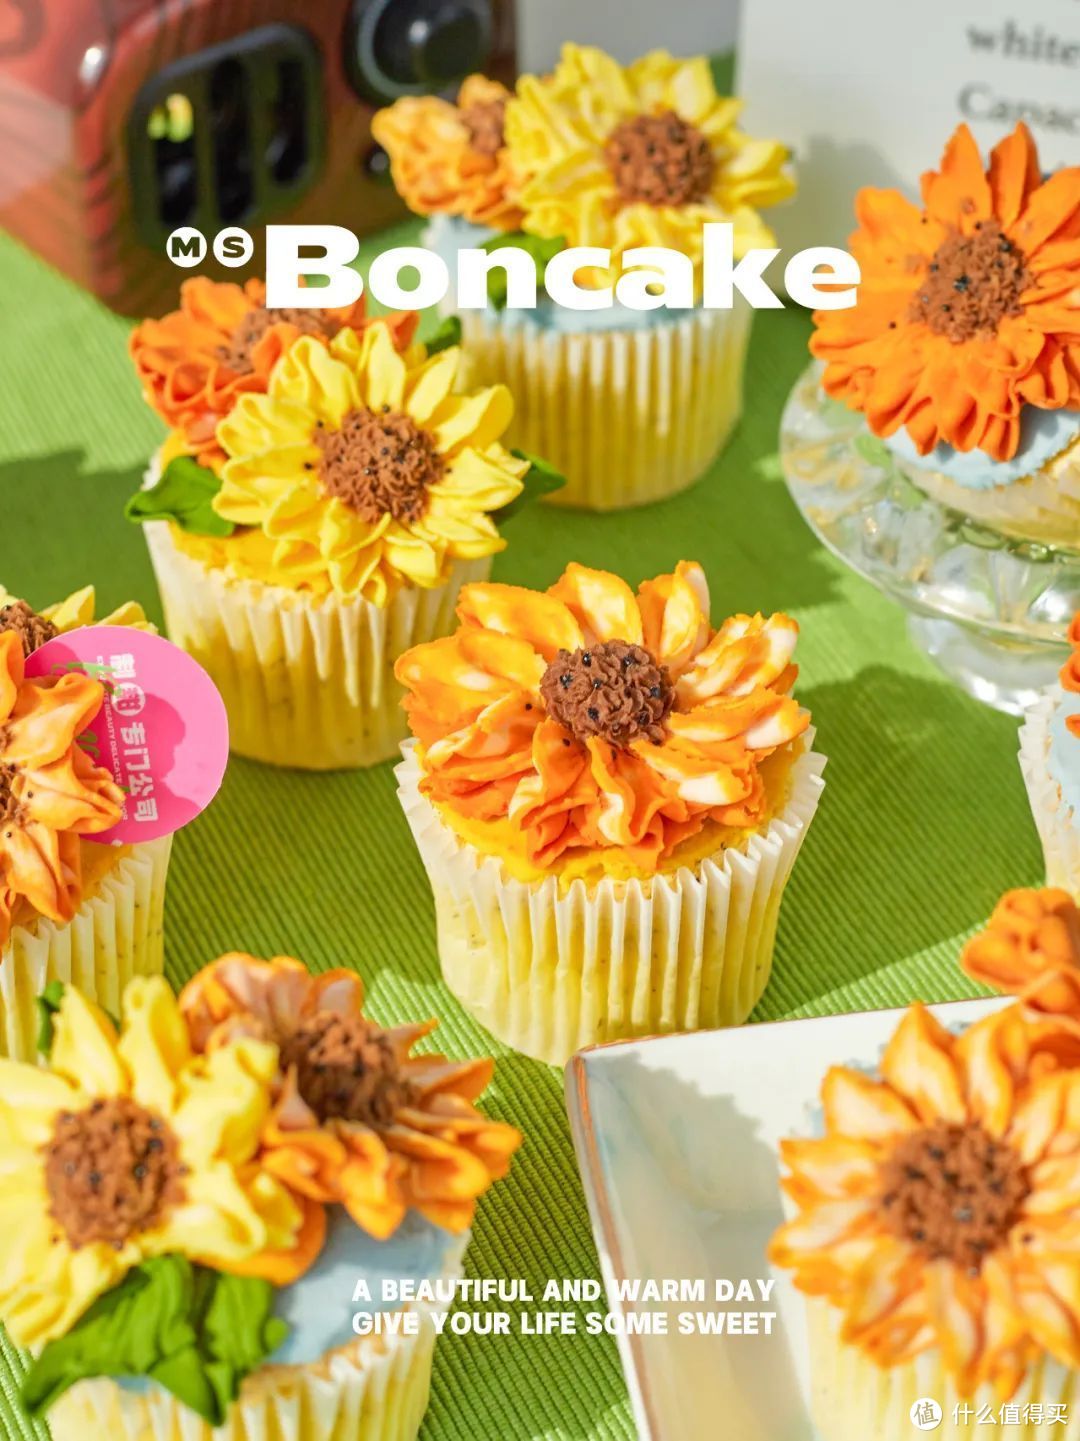 「BON CAKE」创始人7问：不止于高颜值，更想让“每个人的生活中多一点甜”